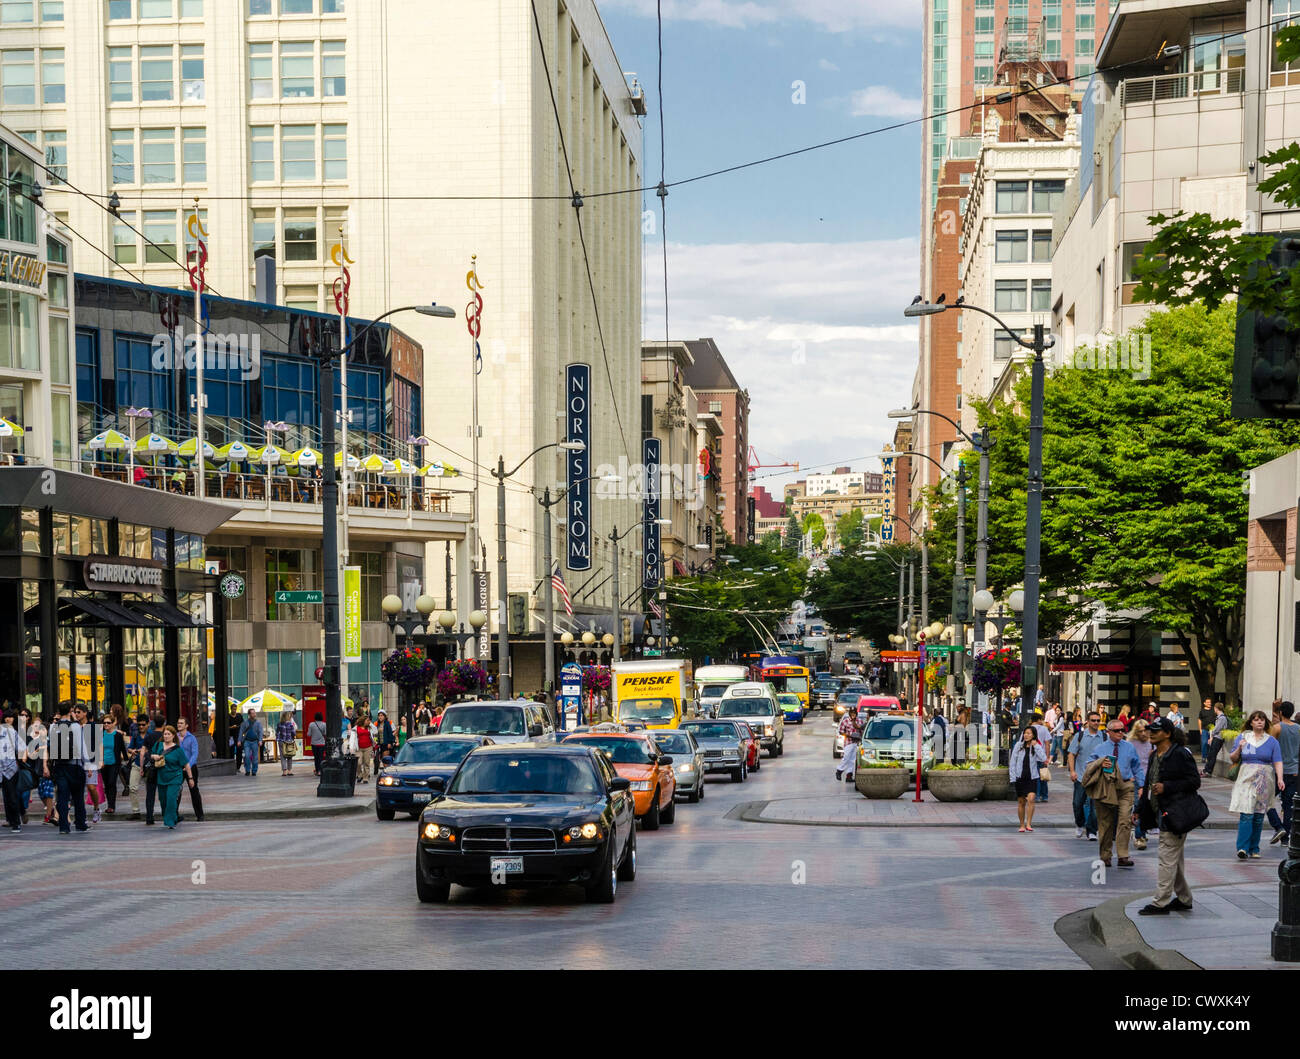 Zeigen Sie nach unten Pine Street, Seattle, USA an - Innenstadt Straßenszene mit Verkehr und Menschen Stockfoto